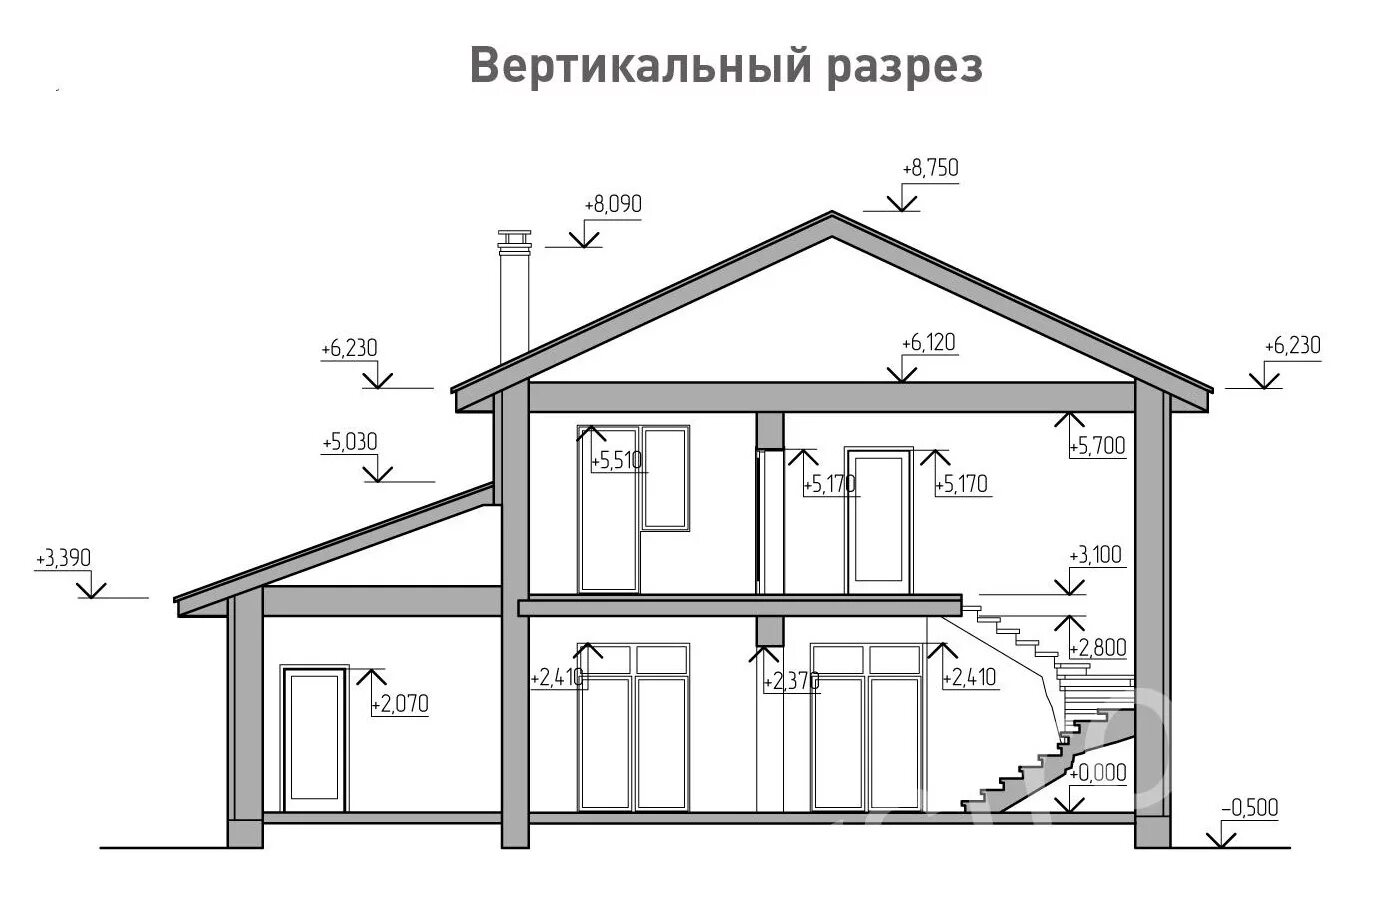 Средняя высота 2 этажа. Вертикальный разрез. Проект дома в разрезе. Разрез дома из керамзитоблока. Вертикальный разрез одноэтажного дома.